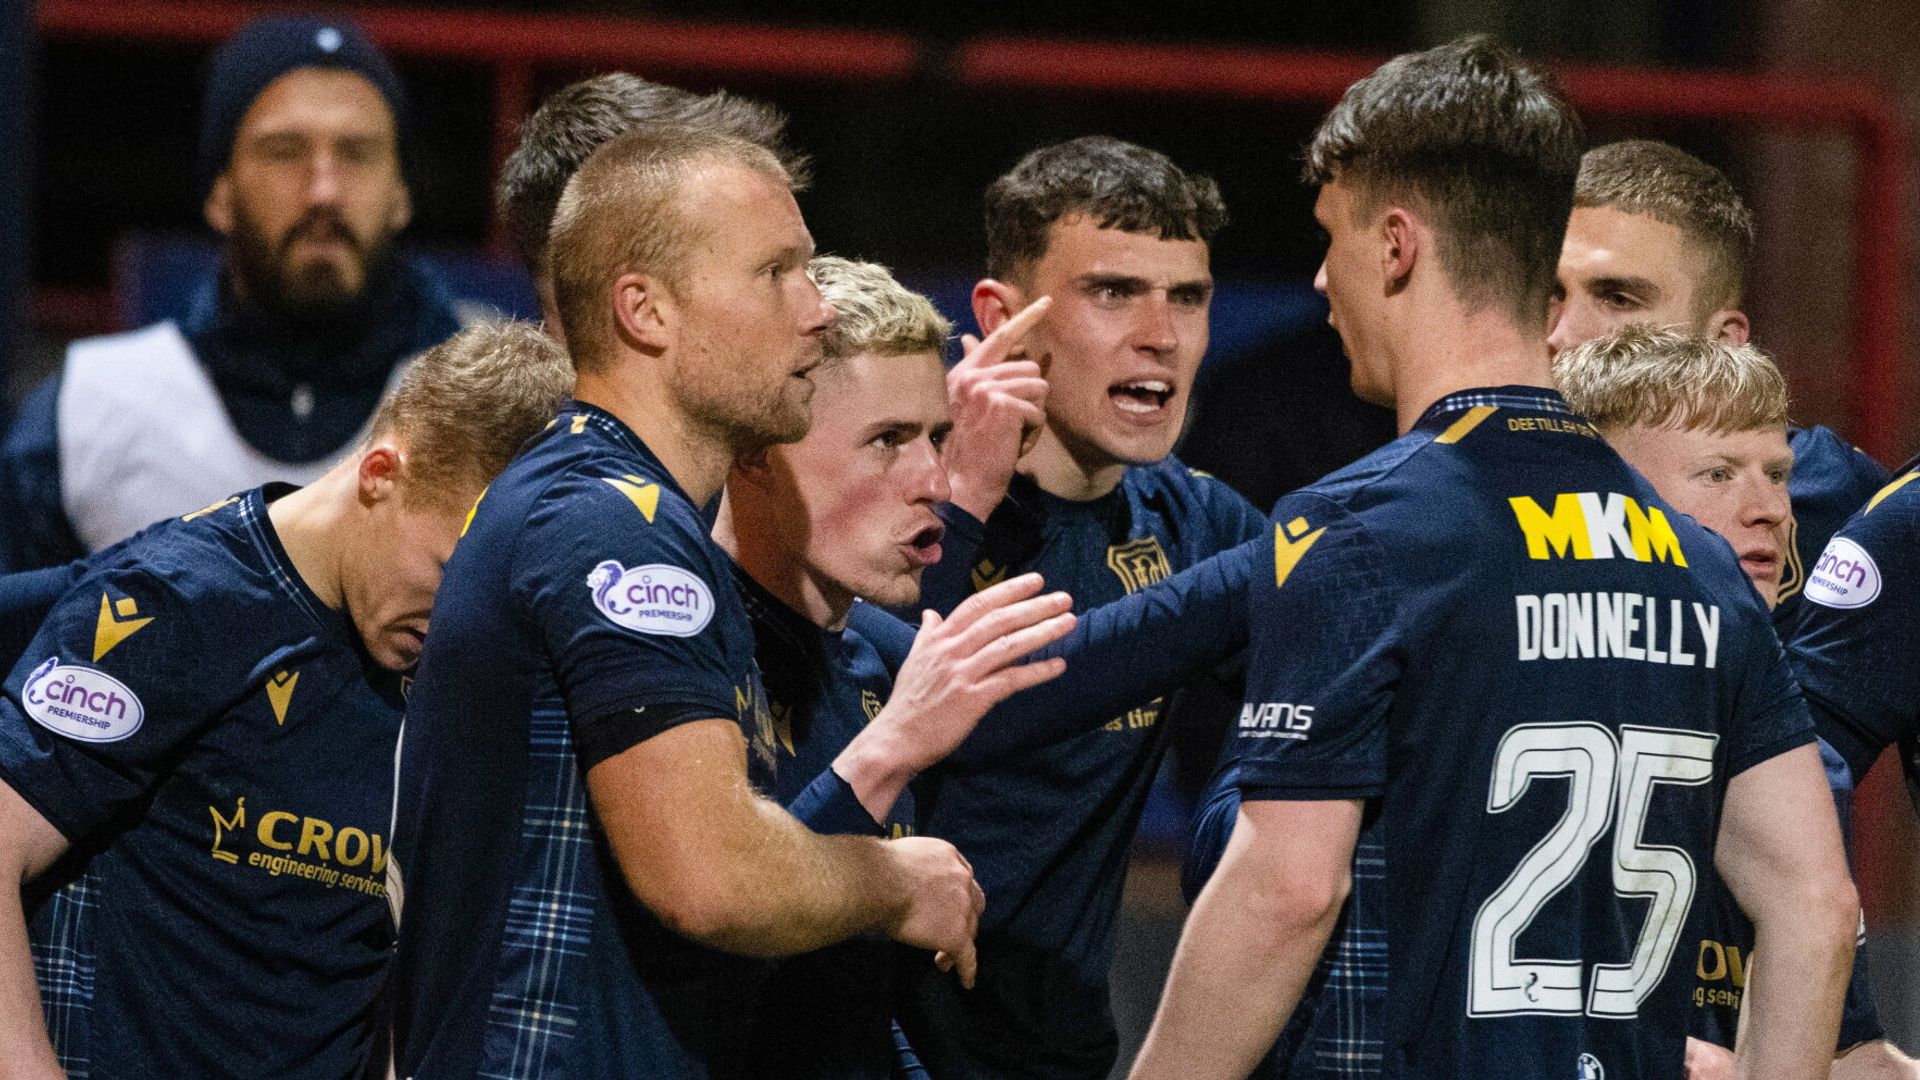 Dundee edge Aberdeen after VAR penalty drama